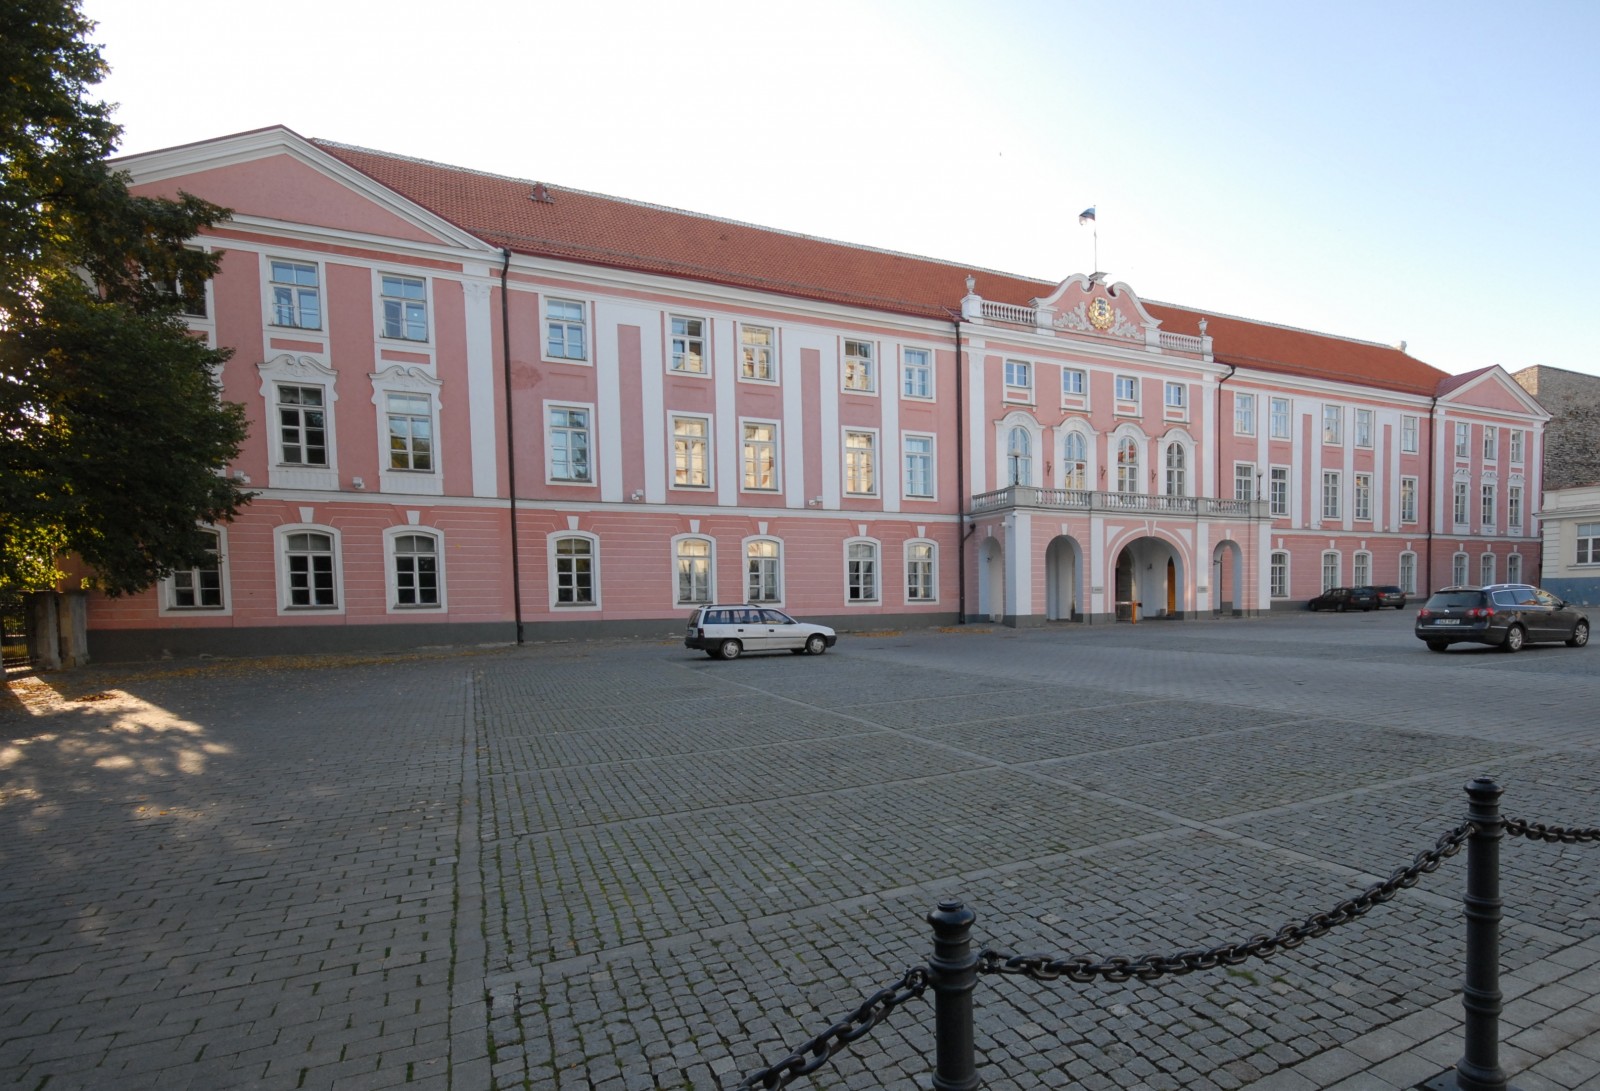 בניין הפרלמנט הוורוד של אסטוניה בבירה טאלין (צילום: Egil / Wikimedia)